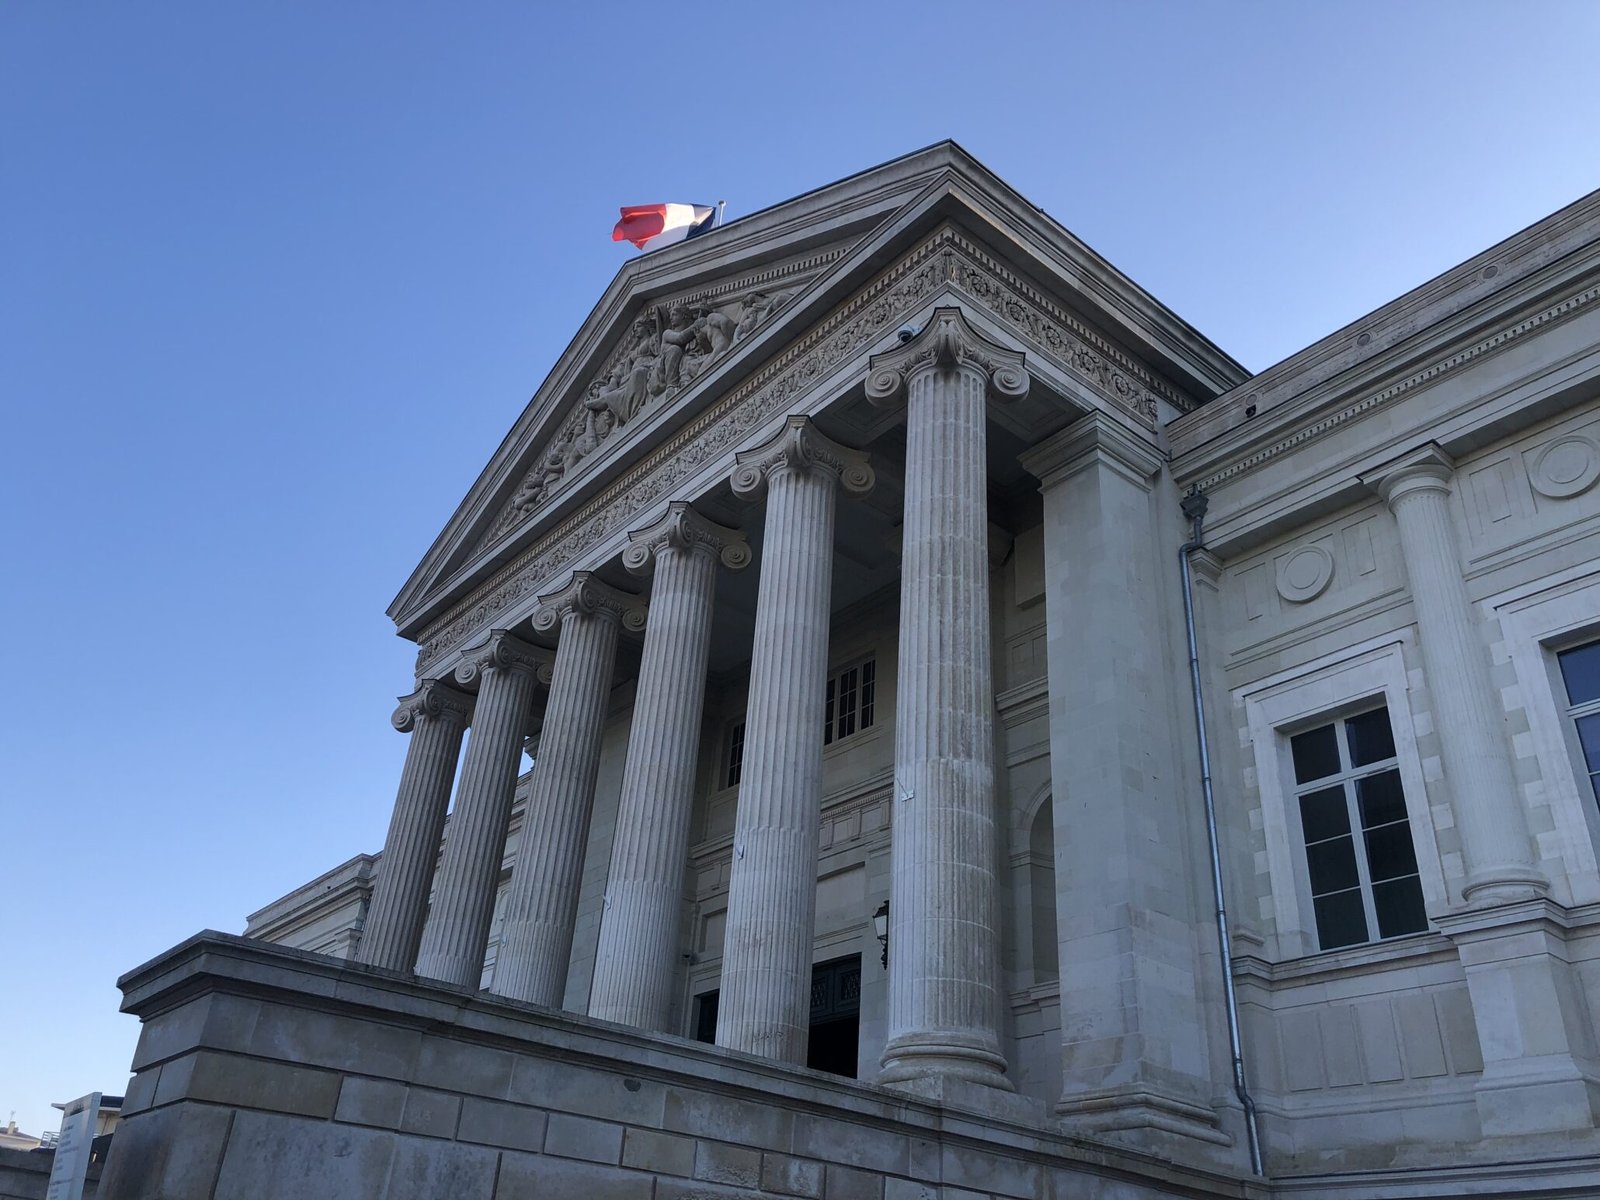 Droit du travail - Palais de justice d'Angers - AD LITEM